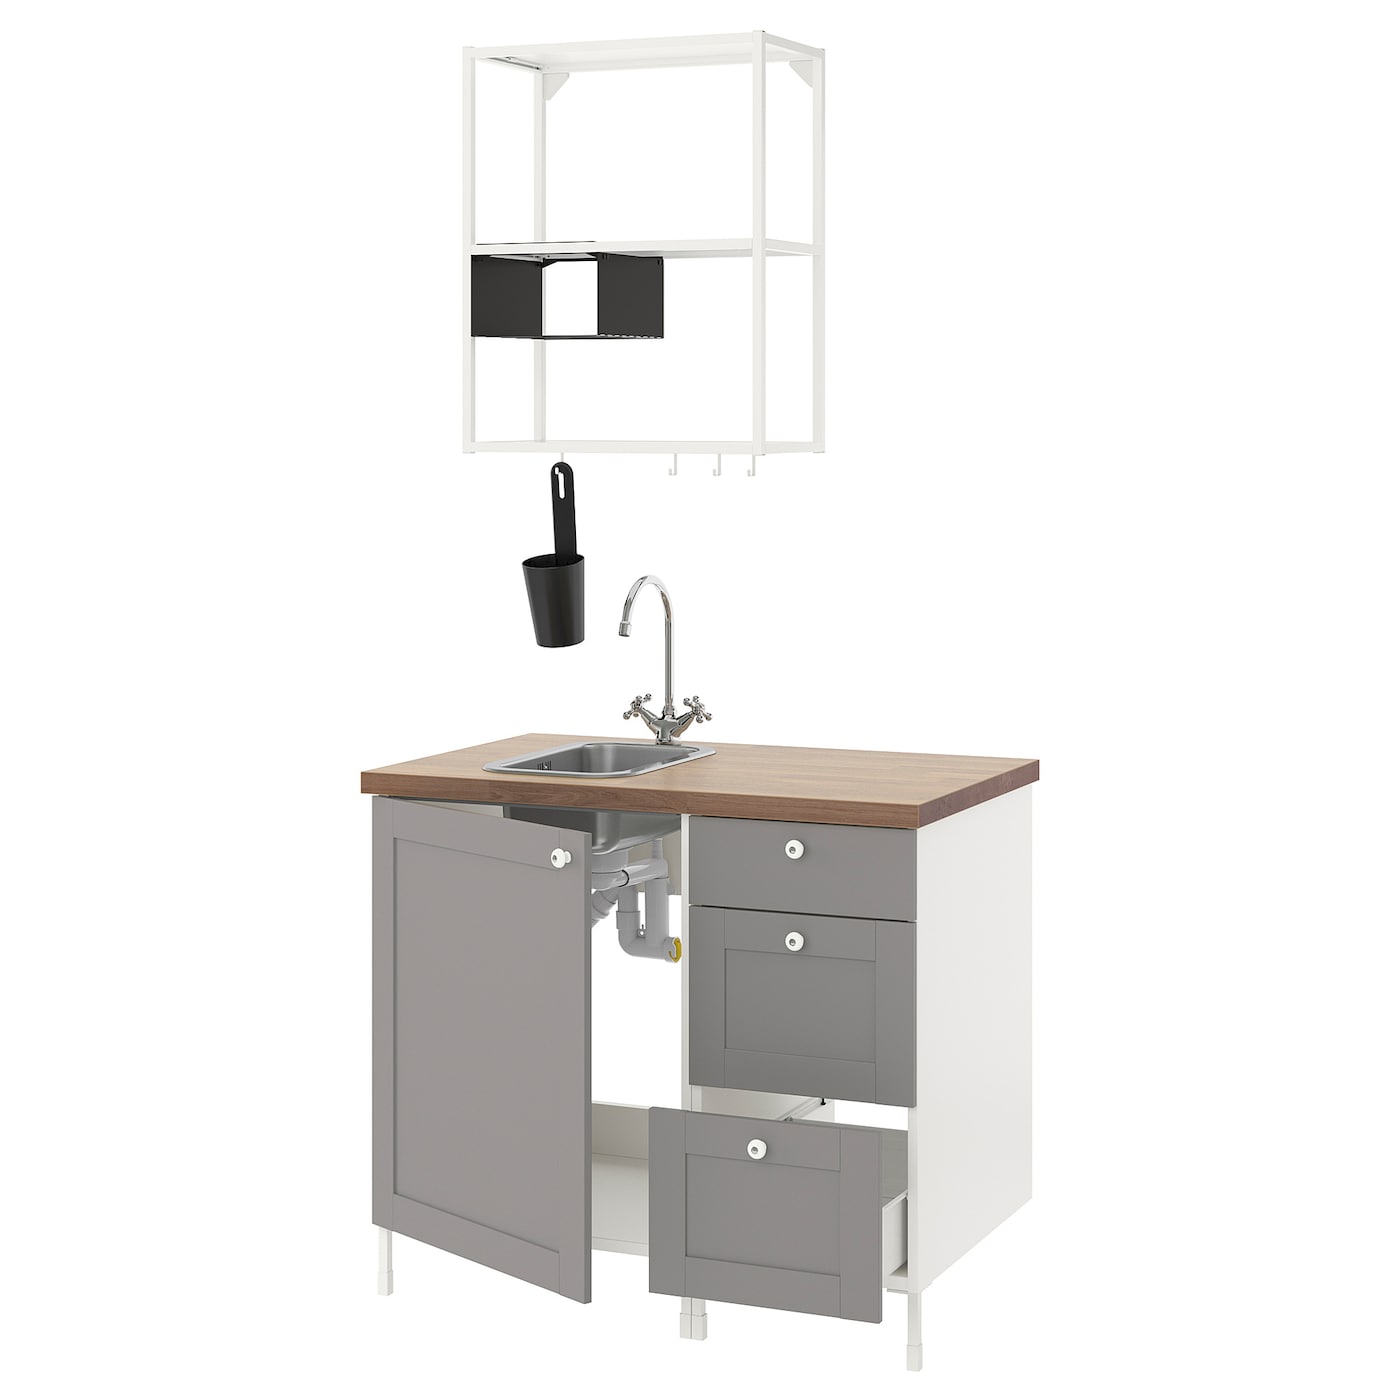 Комбинация шкафов для прачечной и кухни - ENHET  IKEA/ ЭНХЕТ ИКЕА, 103x63,5x222 см, белый/серый/бежевый